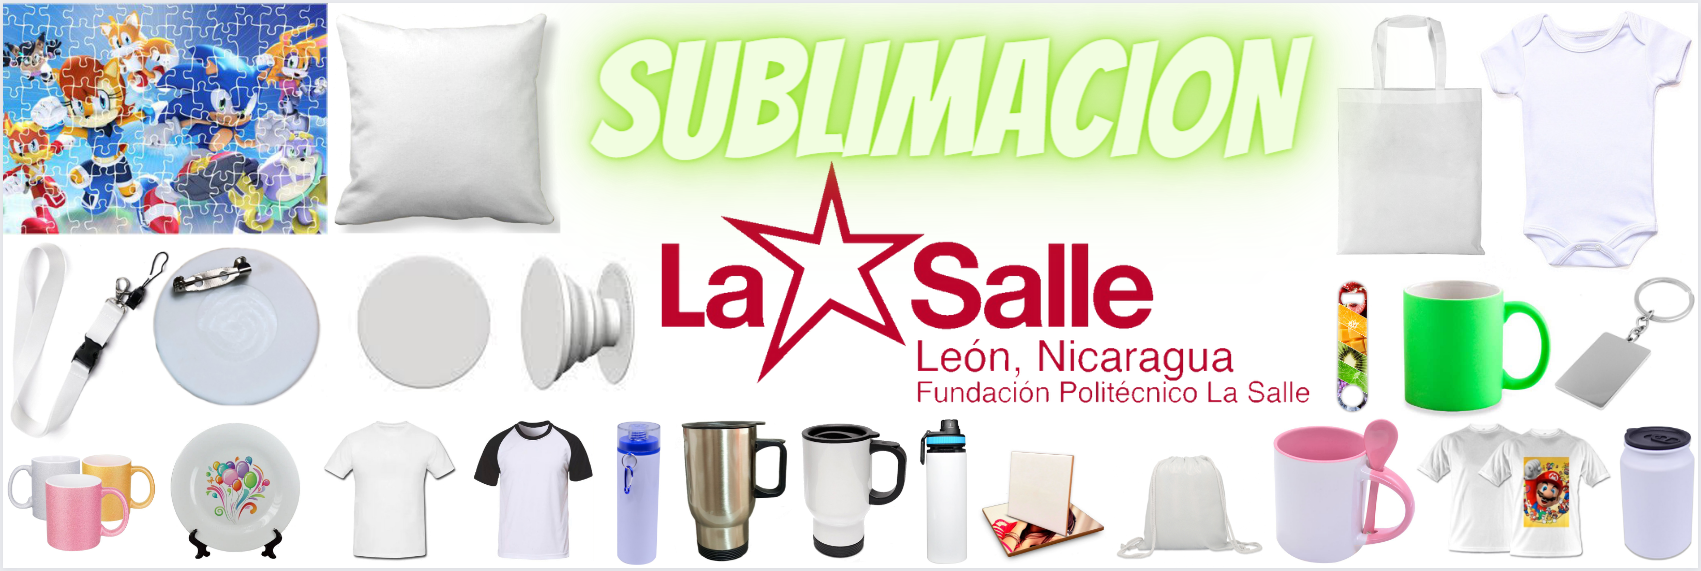 Sublimacion La Salle